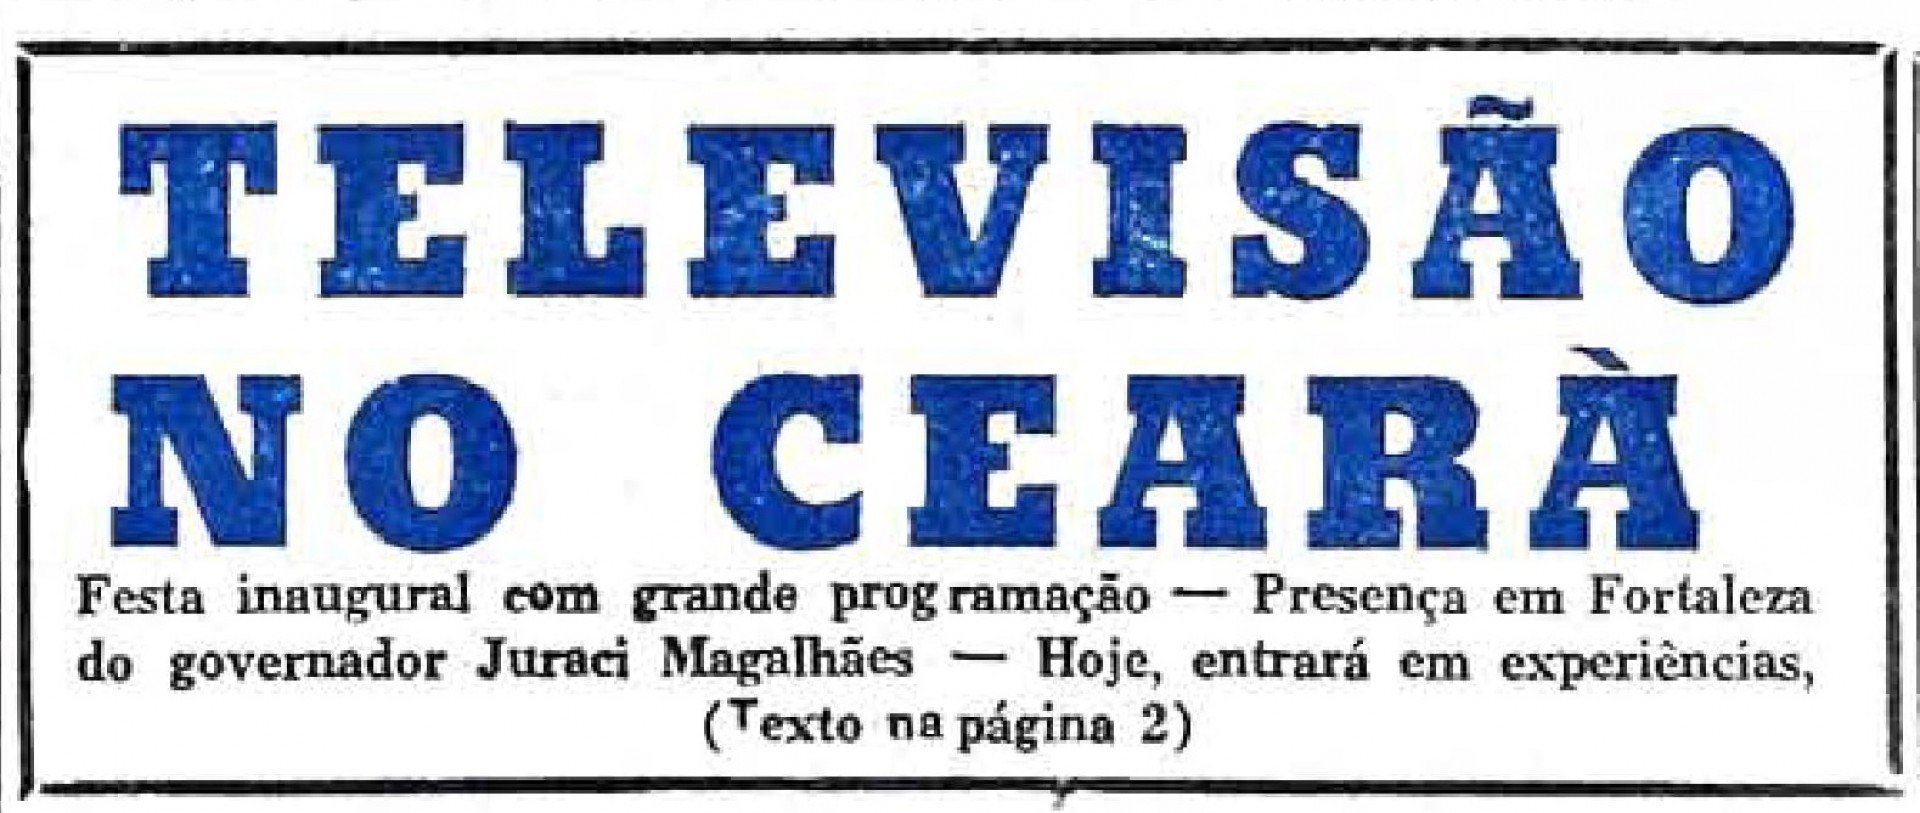 Recorte do fac-símile da capa do O POVO de 24 de novembro de 1960, que anunciava a chegada da TV Ceará (Foto: O POVO.doc)